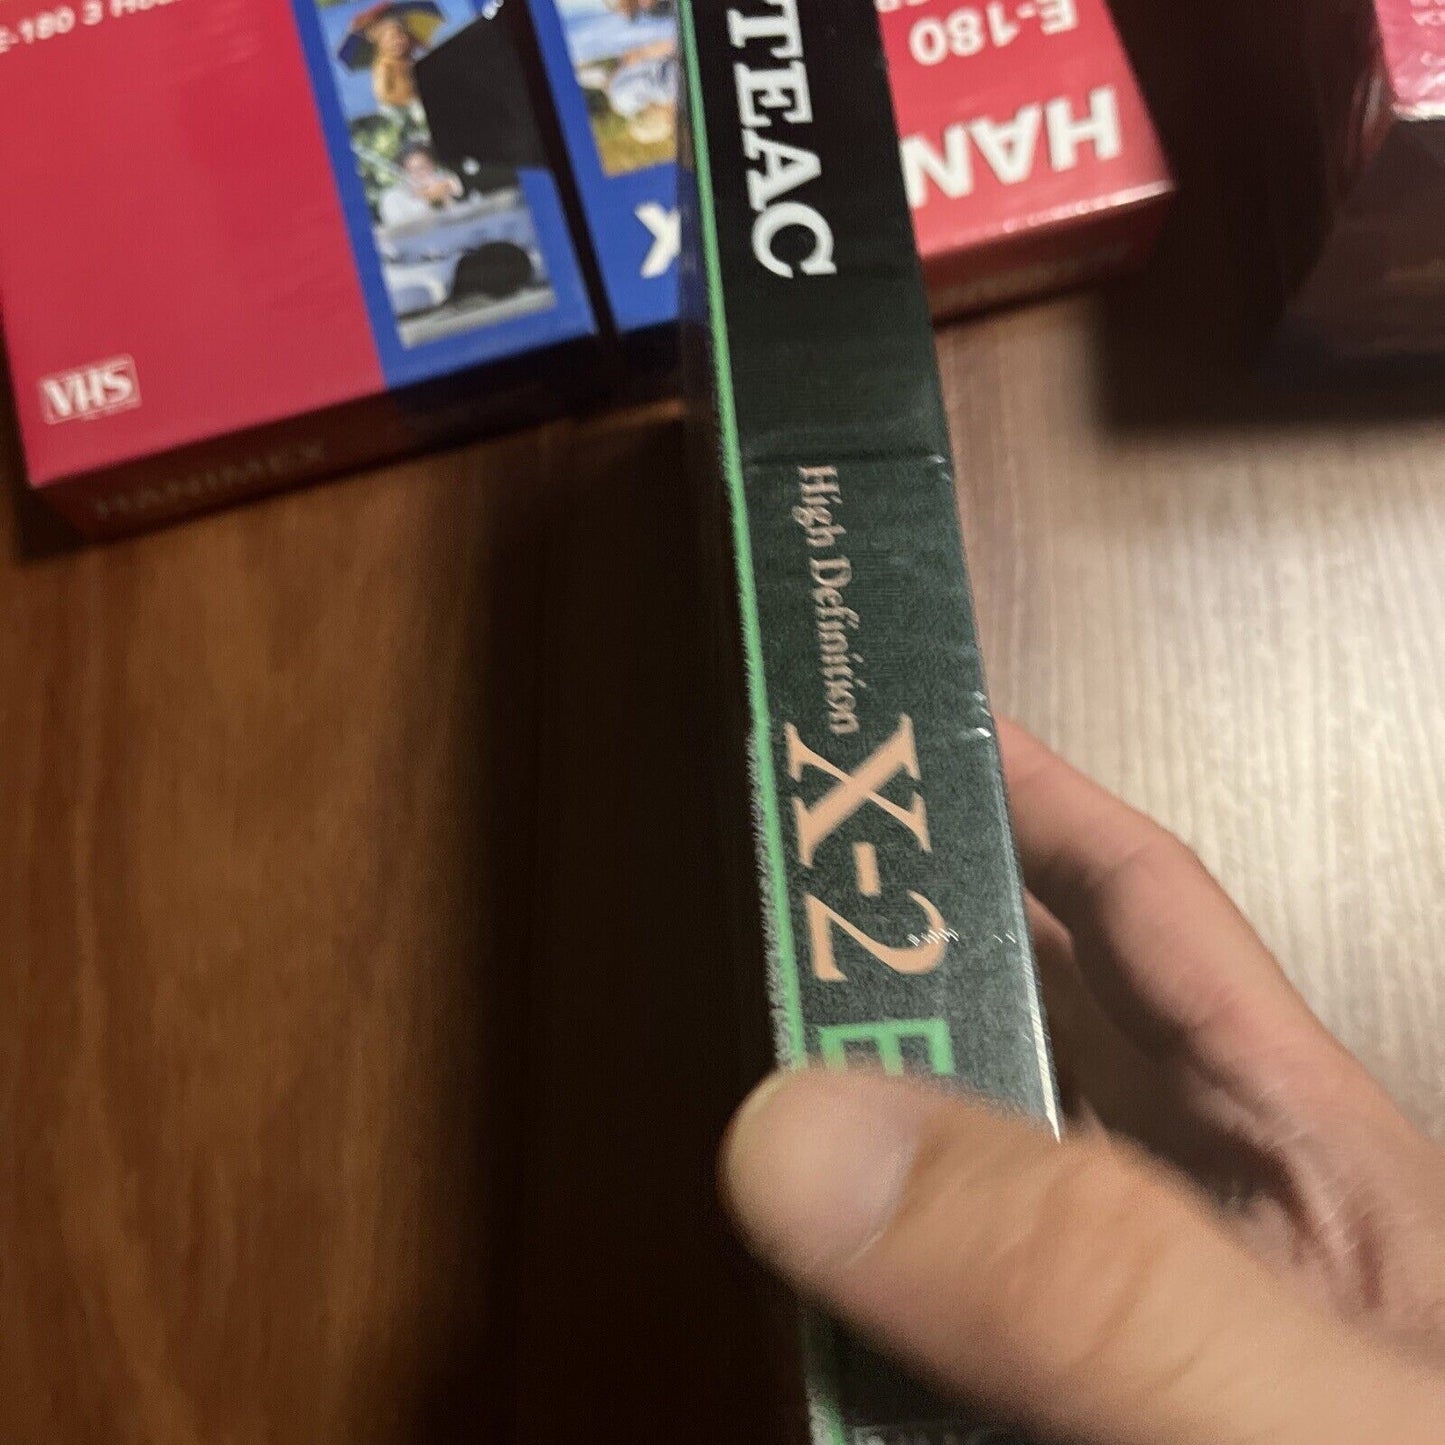 *New Sealed* 1x Teac Blank VHS E-240 & 5x Hanimex E-180 Blank VHS